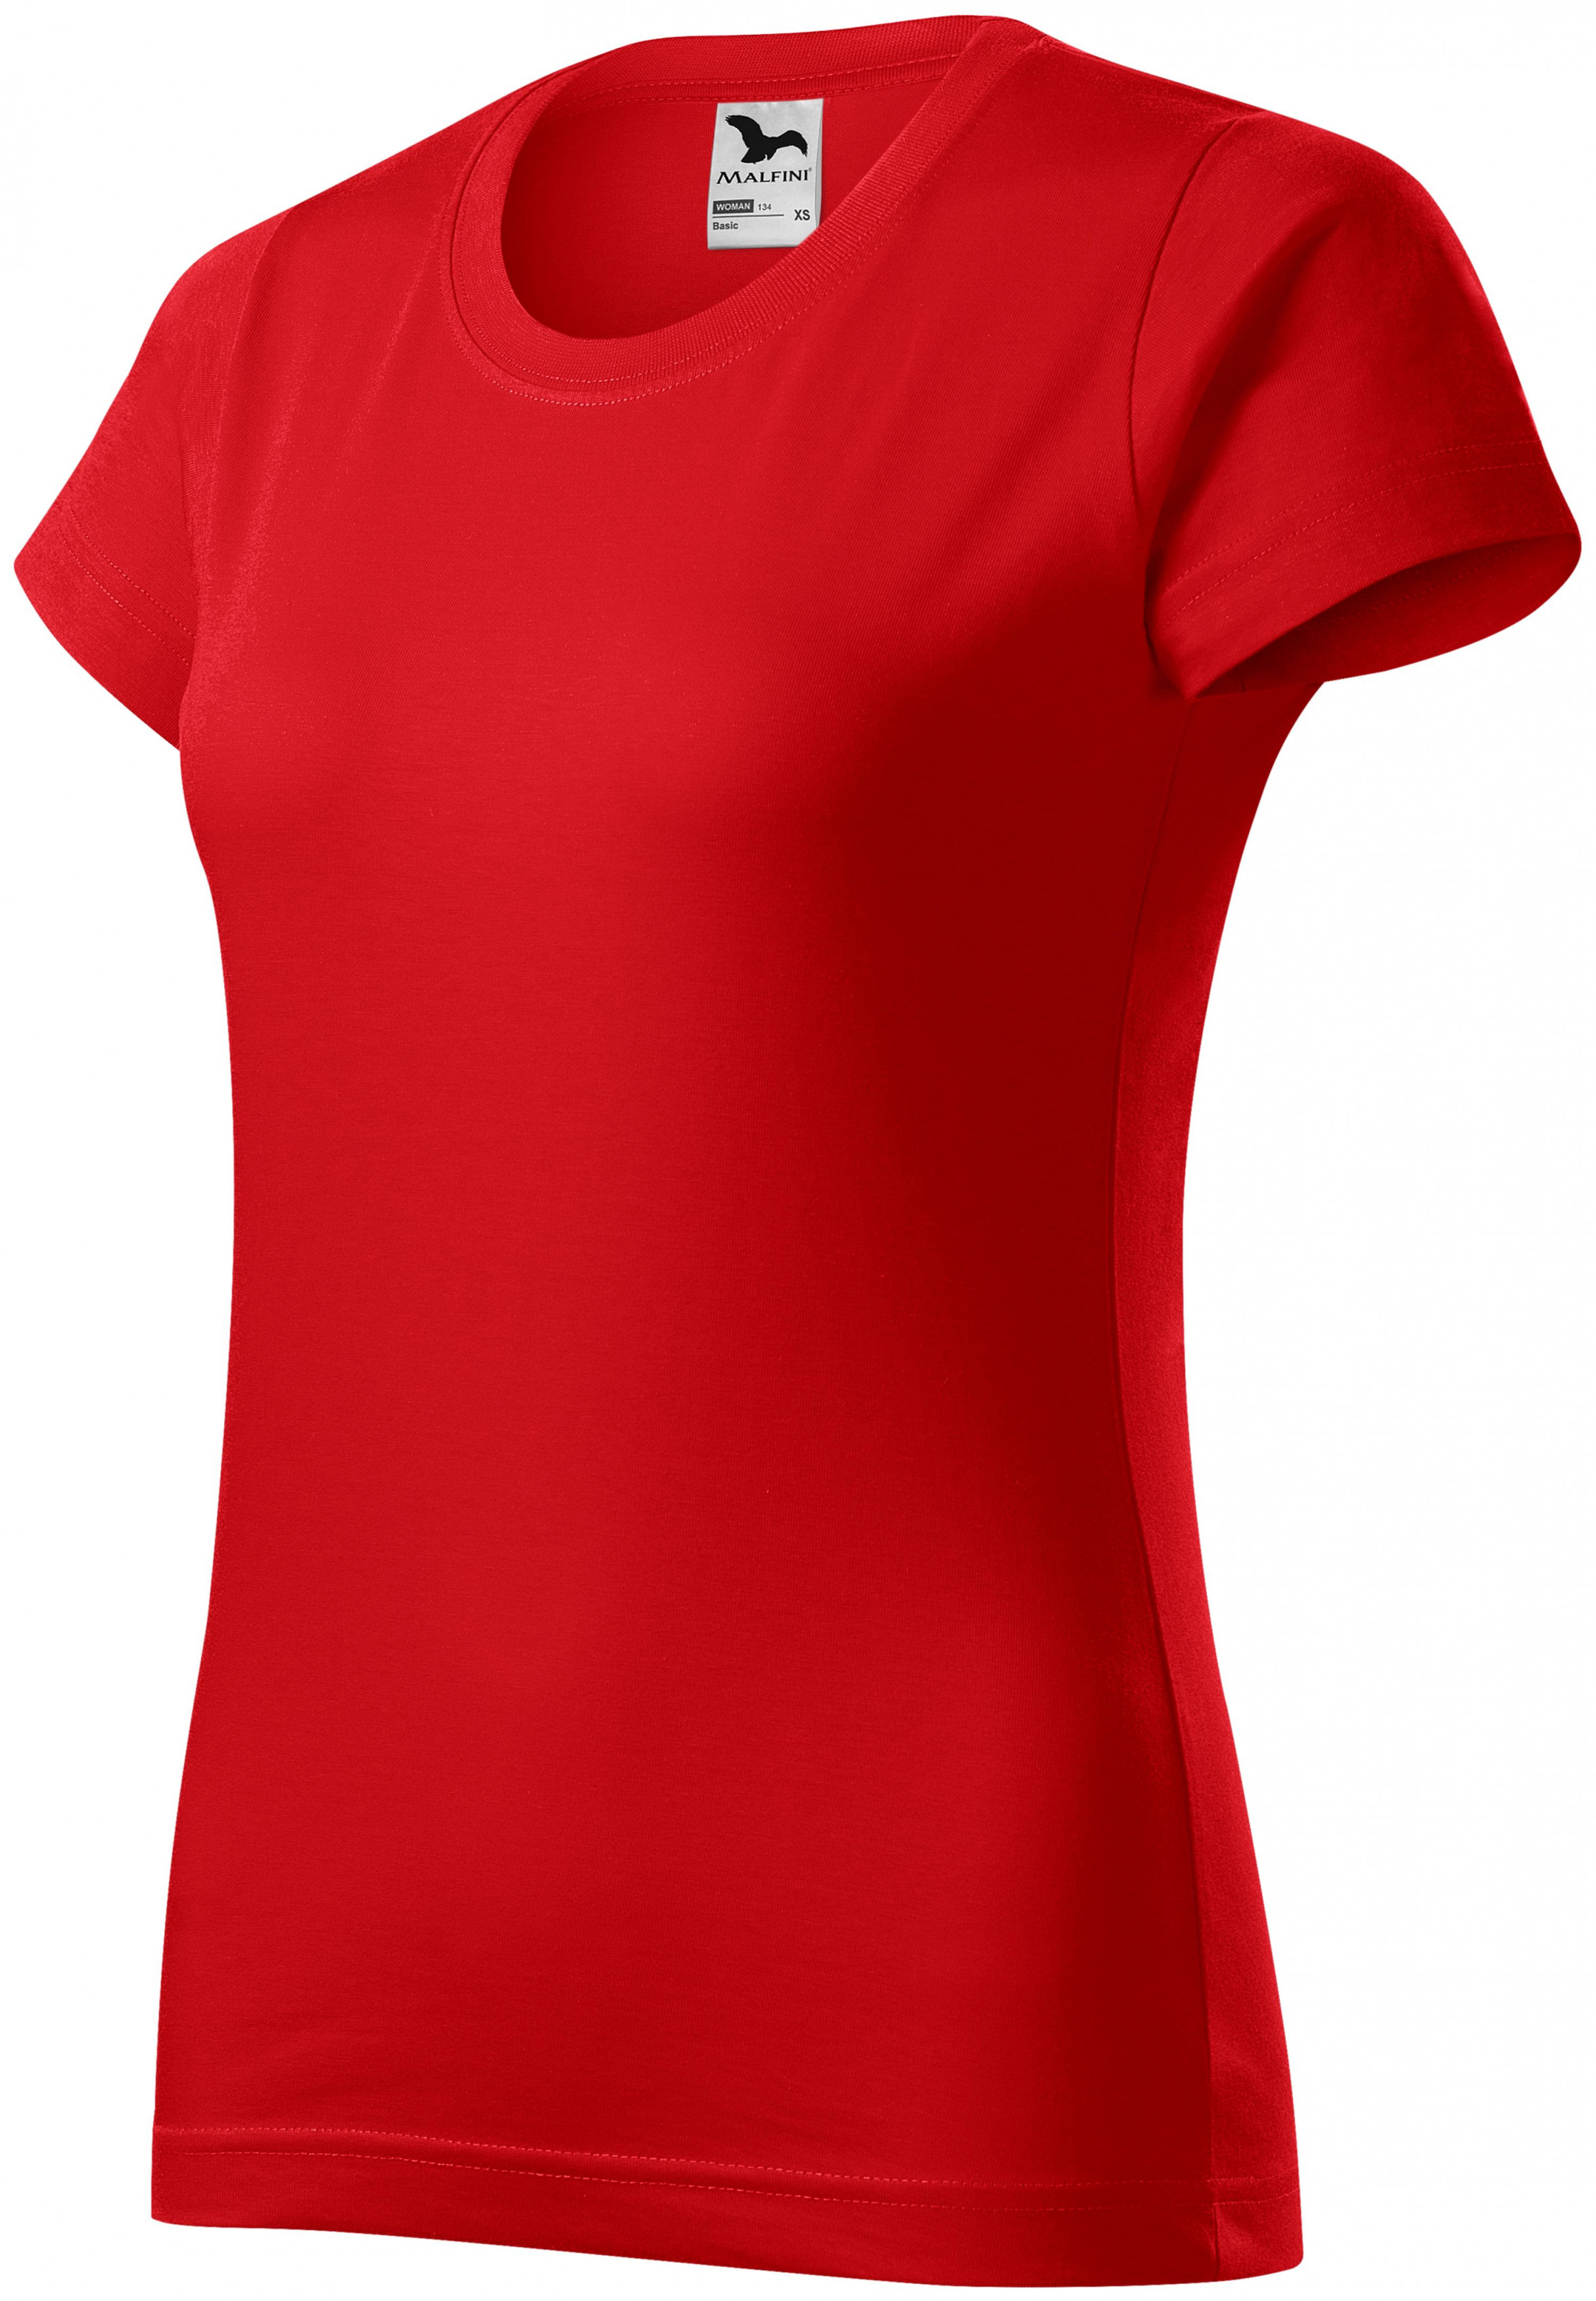 Dámske tričko jednoduché, červená, 2XL